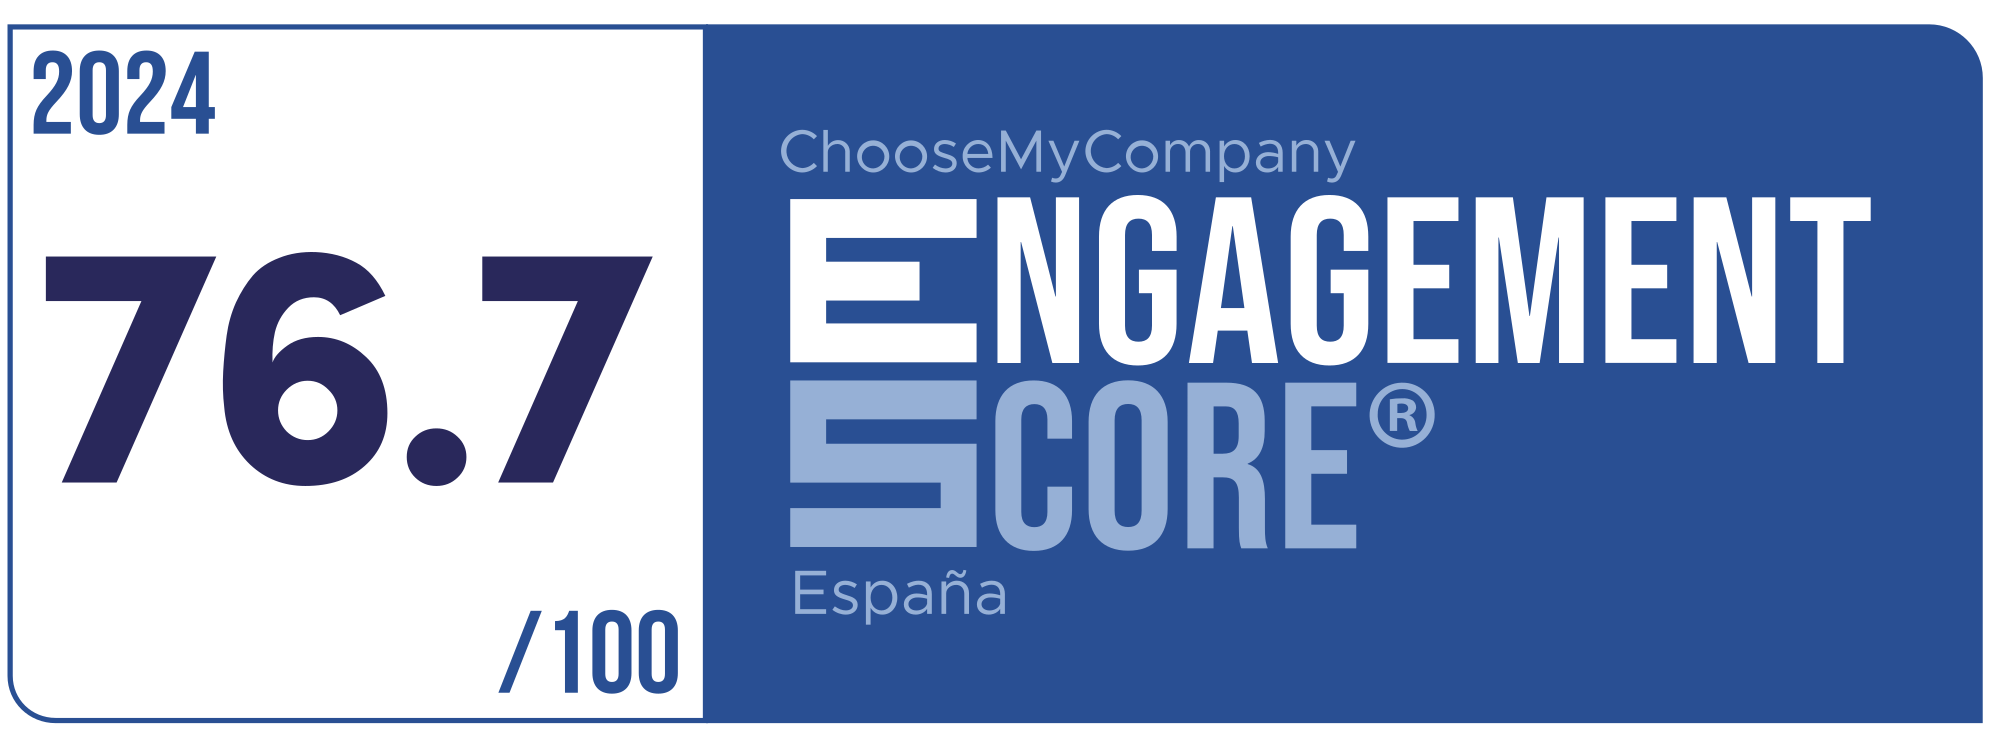 Label Engagement Score 2024 España